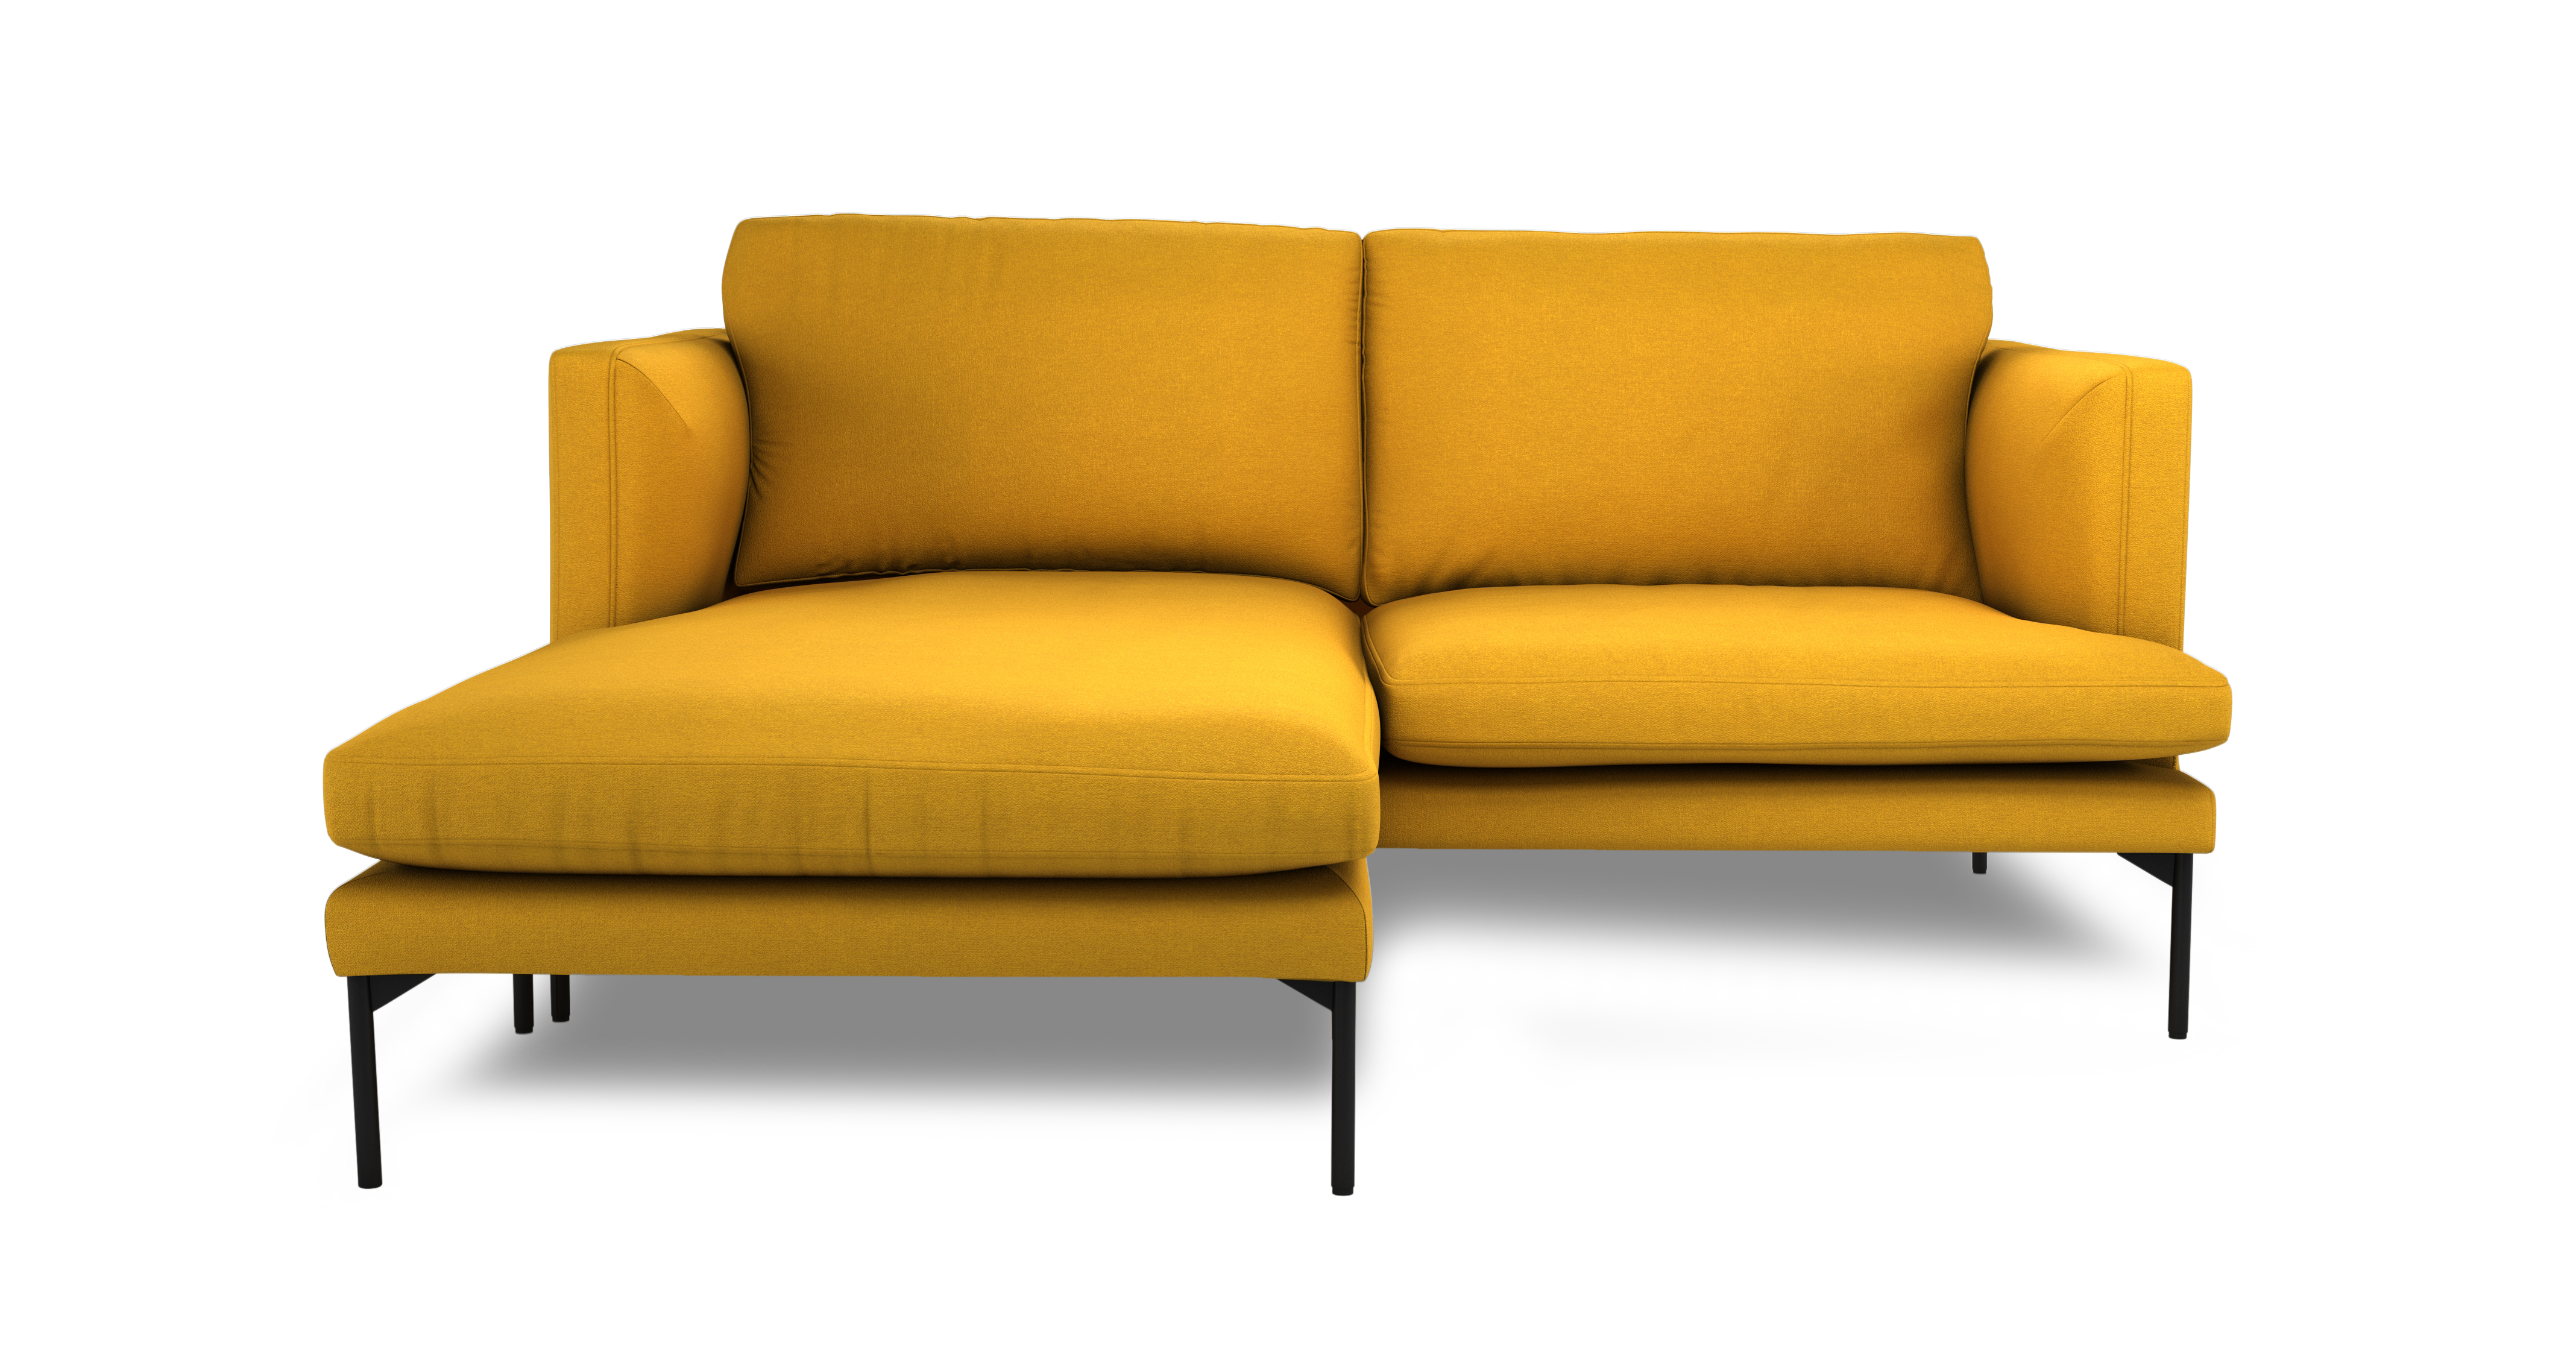 Tom corner sofa in mustard